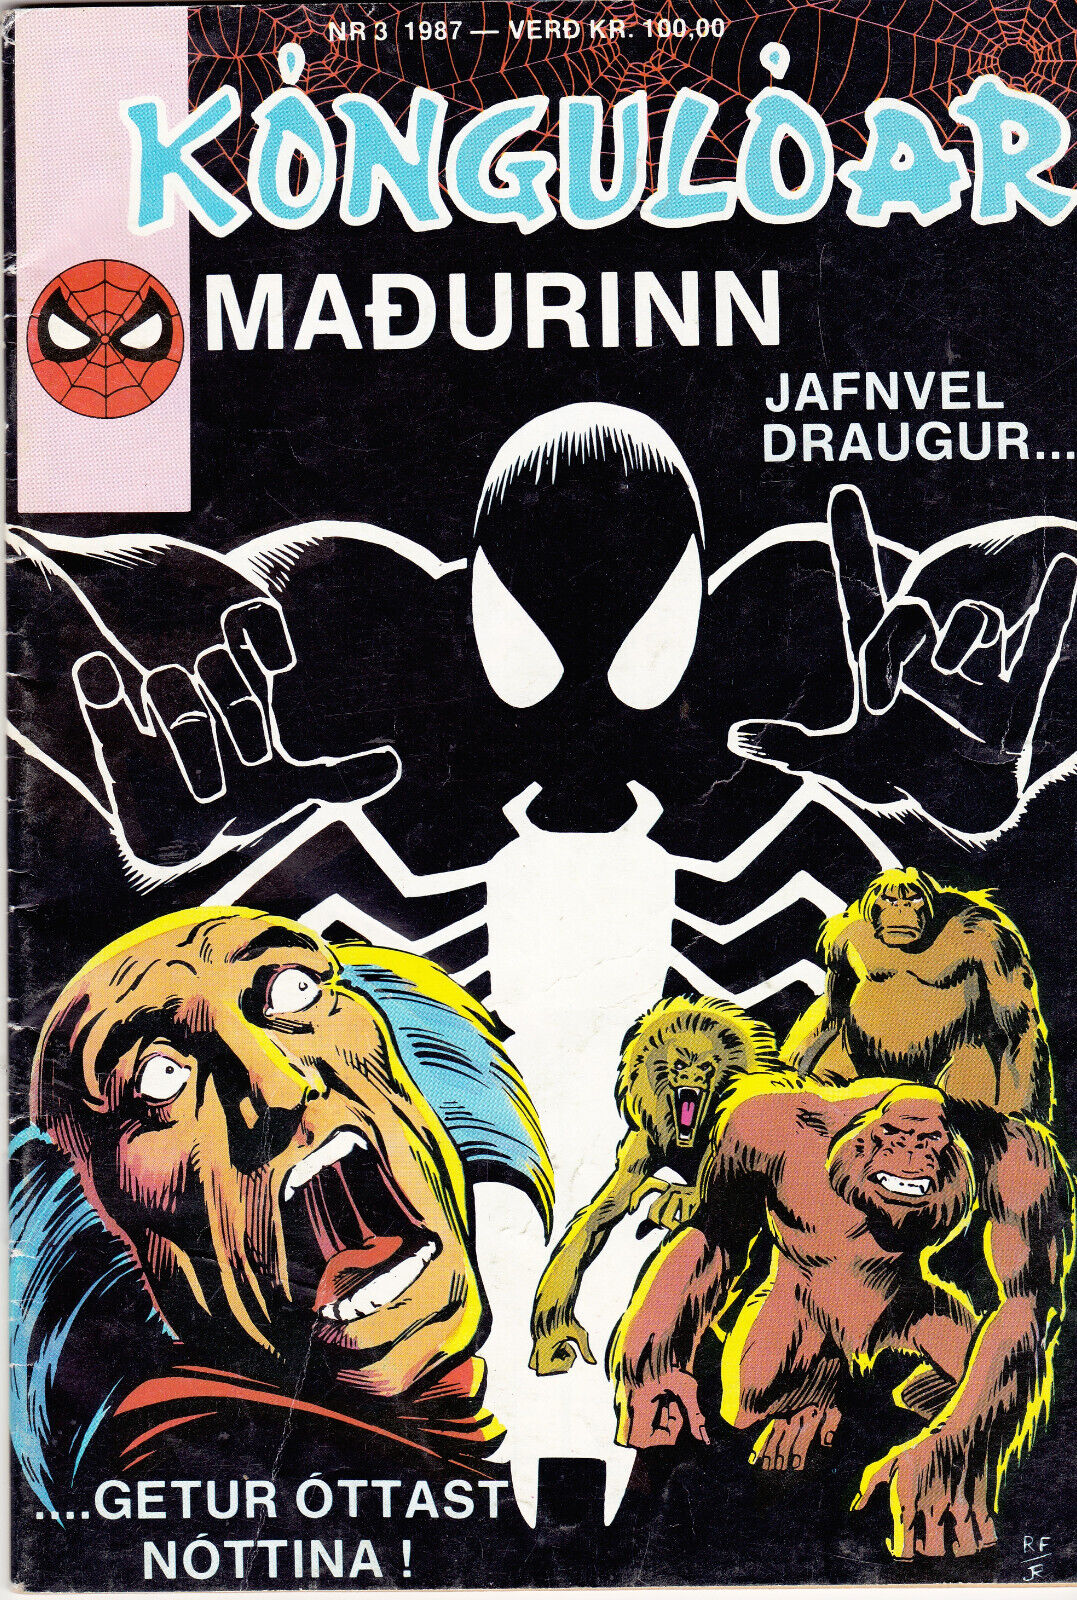 Spider-Man / Kóngulóarmaðurinn  #3  (1987) in Icelandic   1st Black Fox